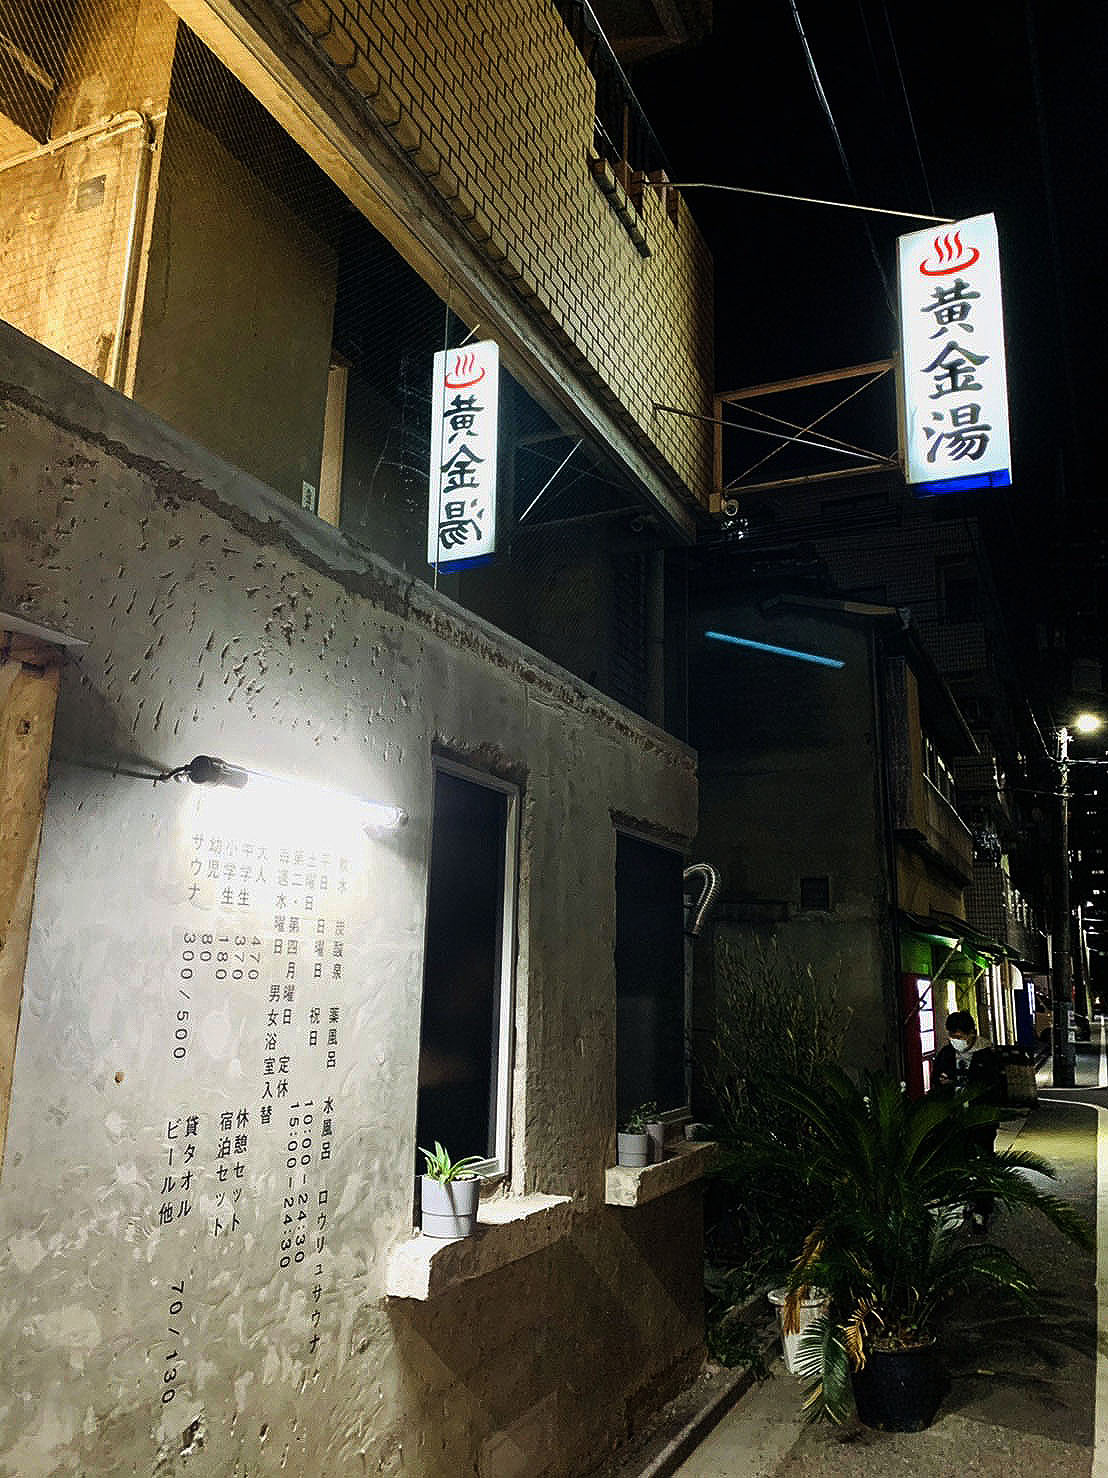 墨田区錦糸町の銭湯・サウナ「黄金湯」の入り口